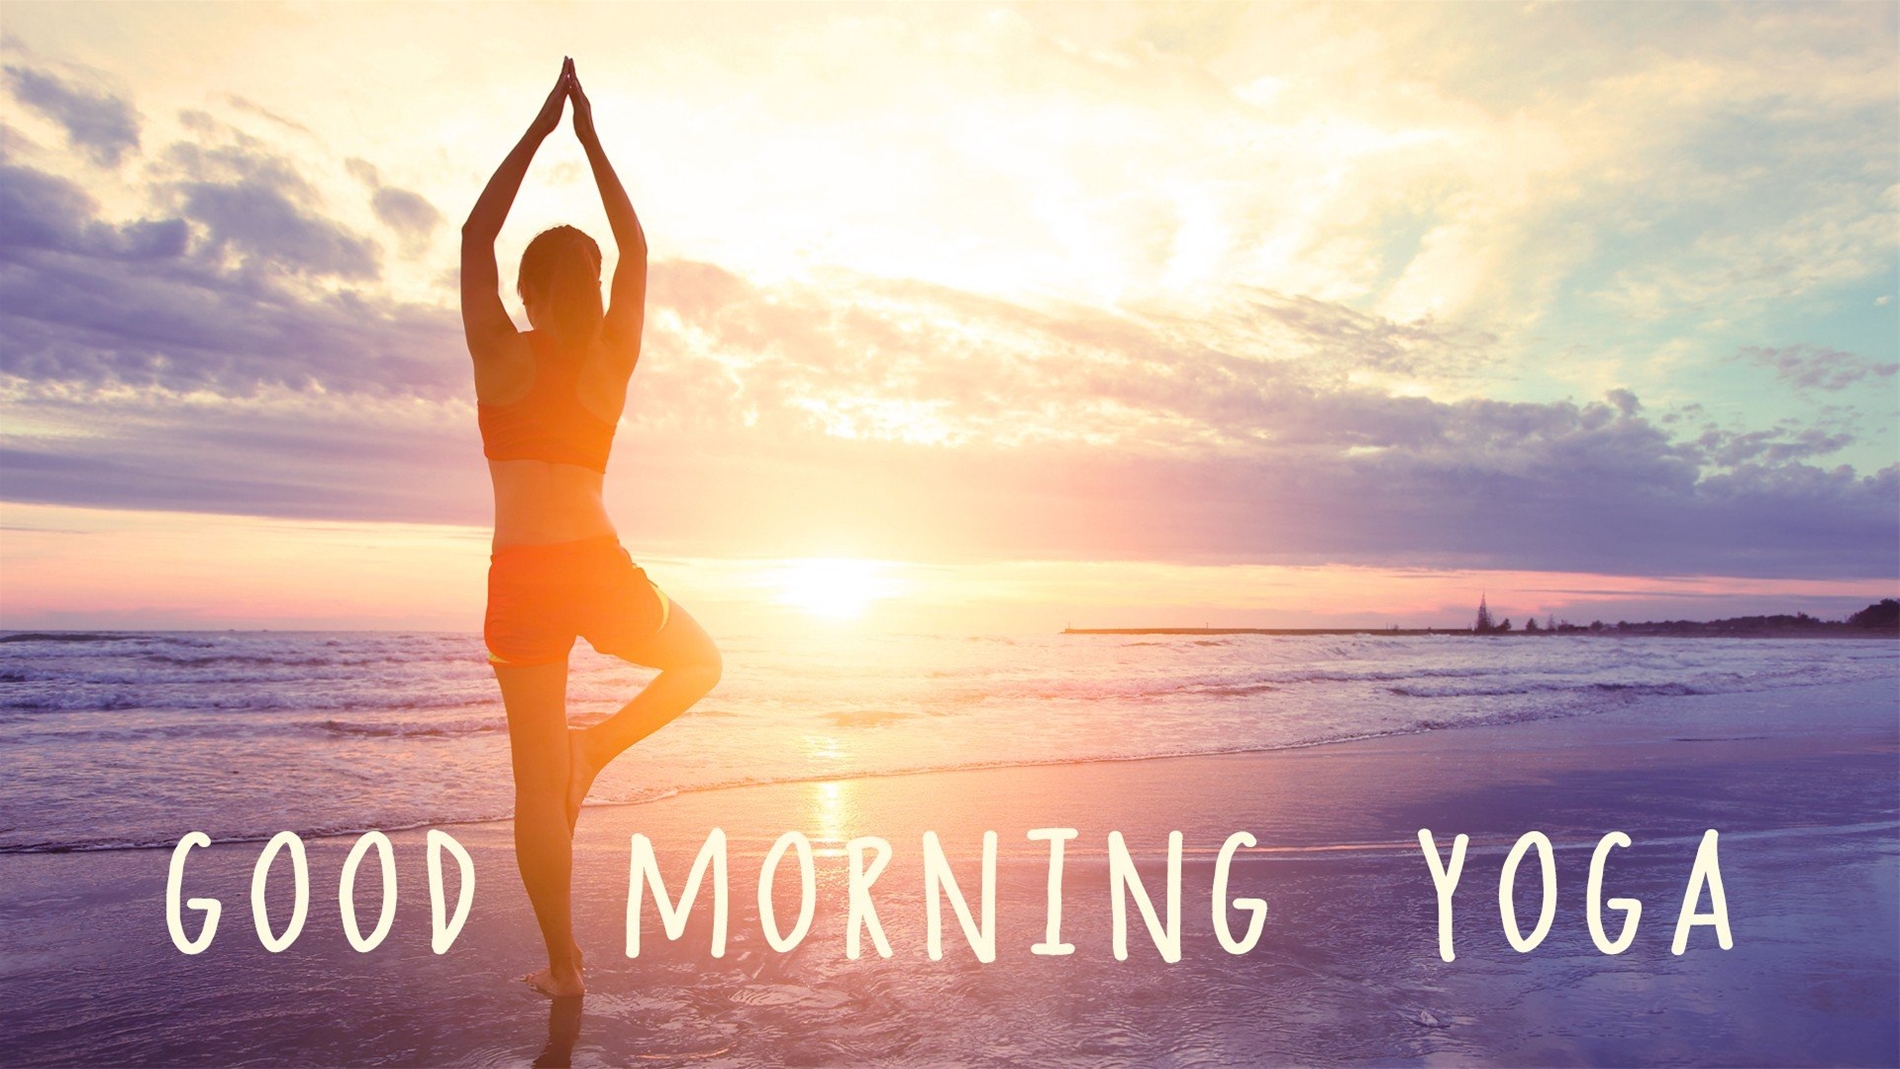 Tập Yoga hiệu quả hơn vào buổi sáng hay buổi tối?